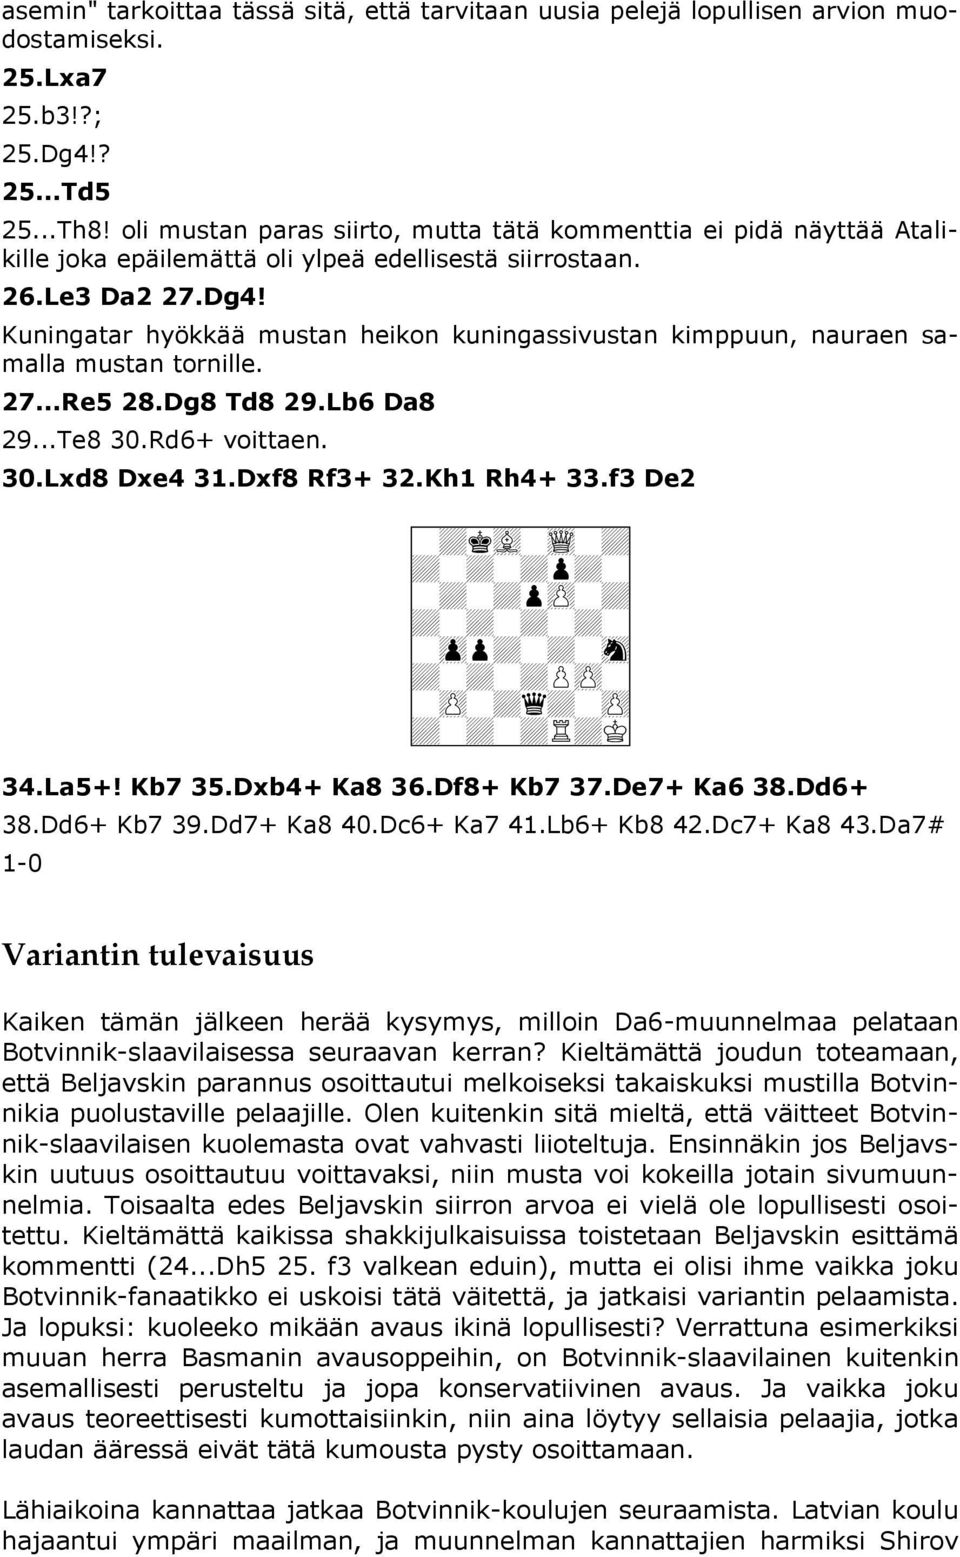 Kuningatar hyökkää mustan heikon kuningassivustan kimppuun, nauraen samalla mustan tornille. 27...Re5 28.Dg8 Td8 29.Lb6 Da8 29...Te8 30.Rd6+ voittaen. 30.Lxd8 Dxe4 31.Dxf8 Rf3+ 32.Kh1 Rh4+ 33.